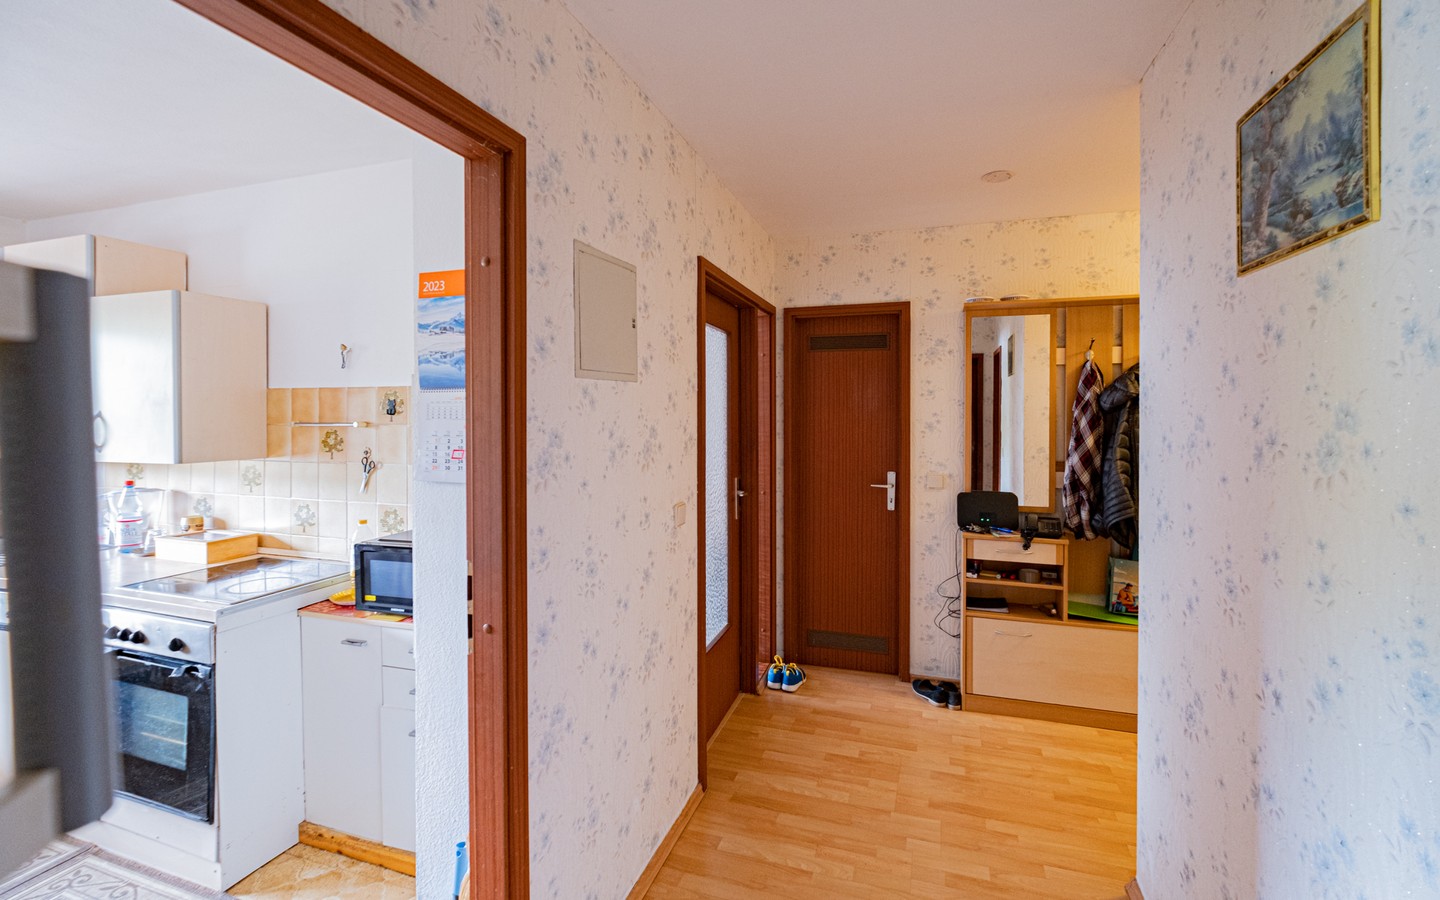 Flur - Kapitalanlage in Leimen: vermietete 2-Zimmer-Wohnung (barrierefrei) mit Loggia und TG-Stellplatz